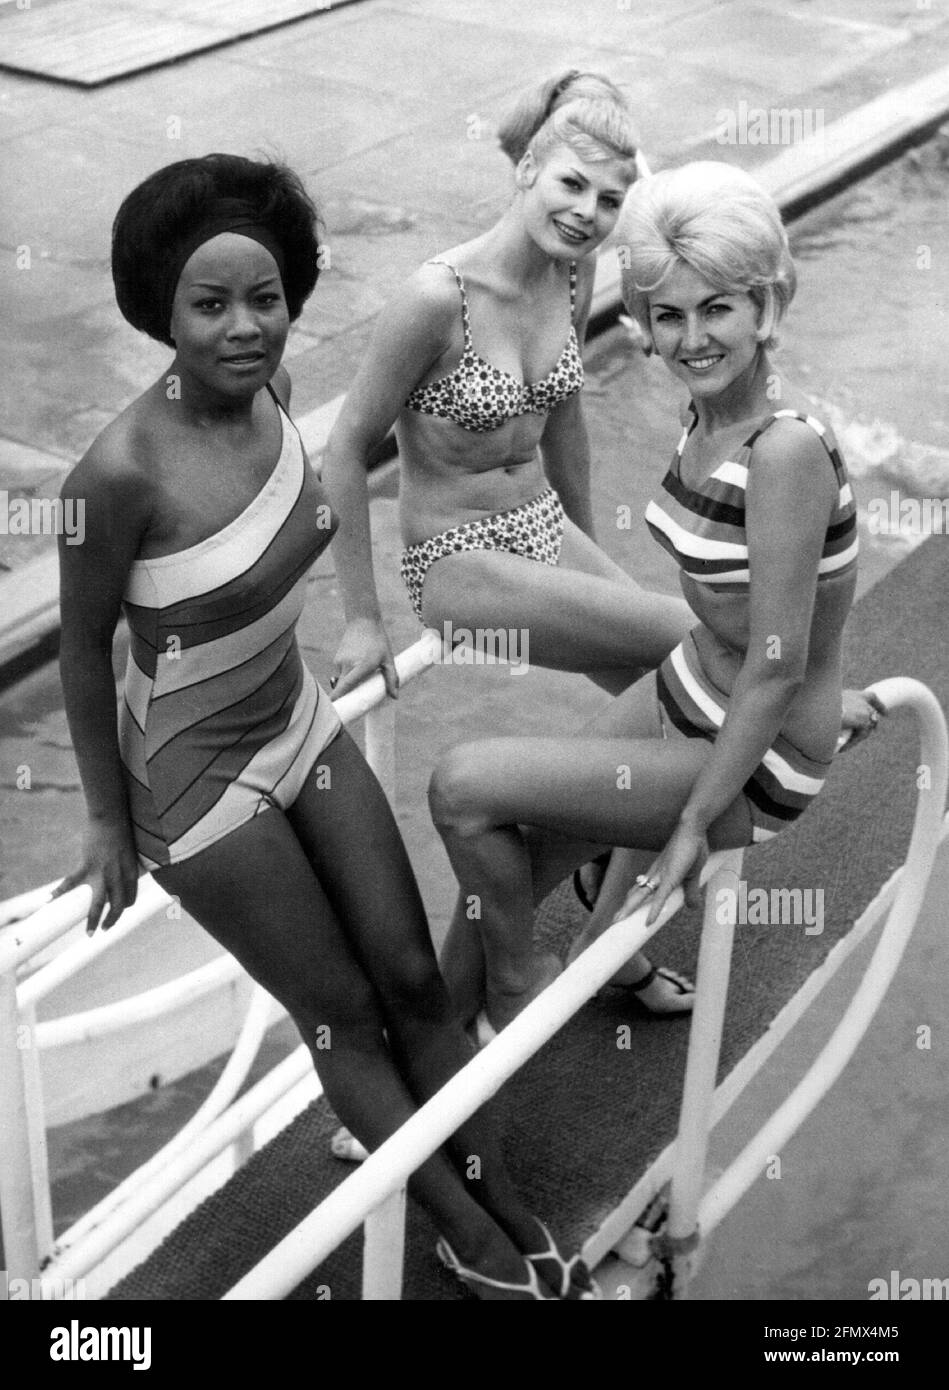 Mode, 60er Jahre, Frauen, Bikini, Badeanzug, In voller Länge, sitzend,  Gangway, 1963, ZUSÄTZLICHE-RIGHTS-CLEARANCE-INFO-NOT-AVAILABLE  Stockfotografie - Alamy